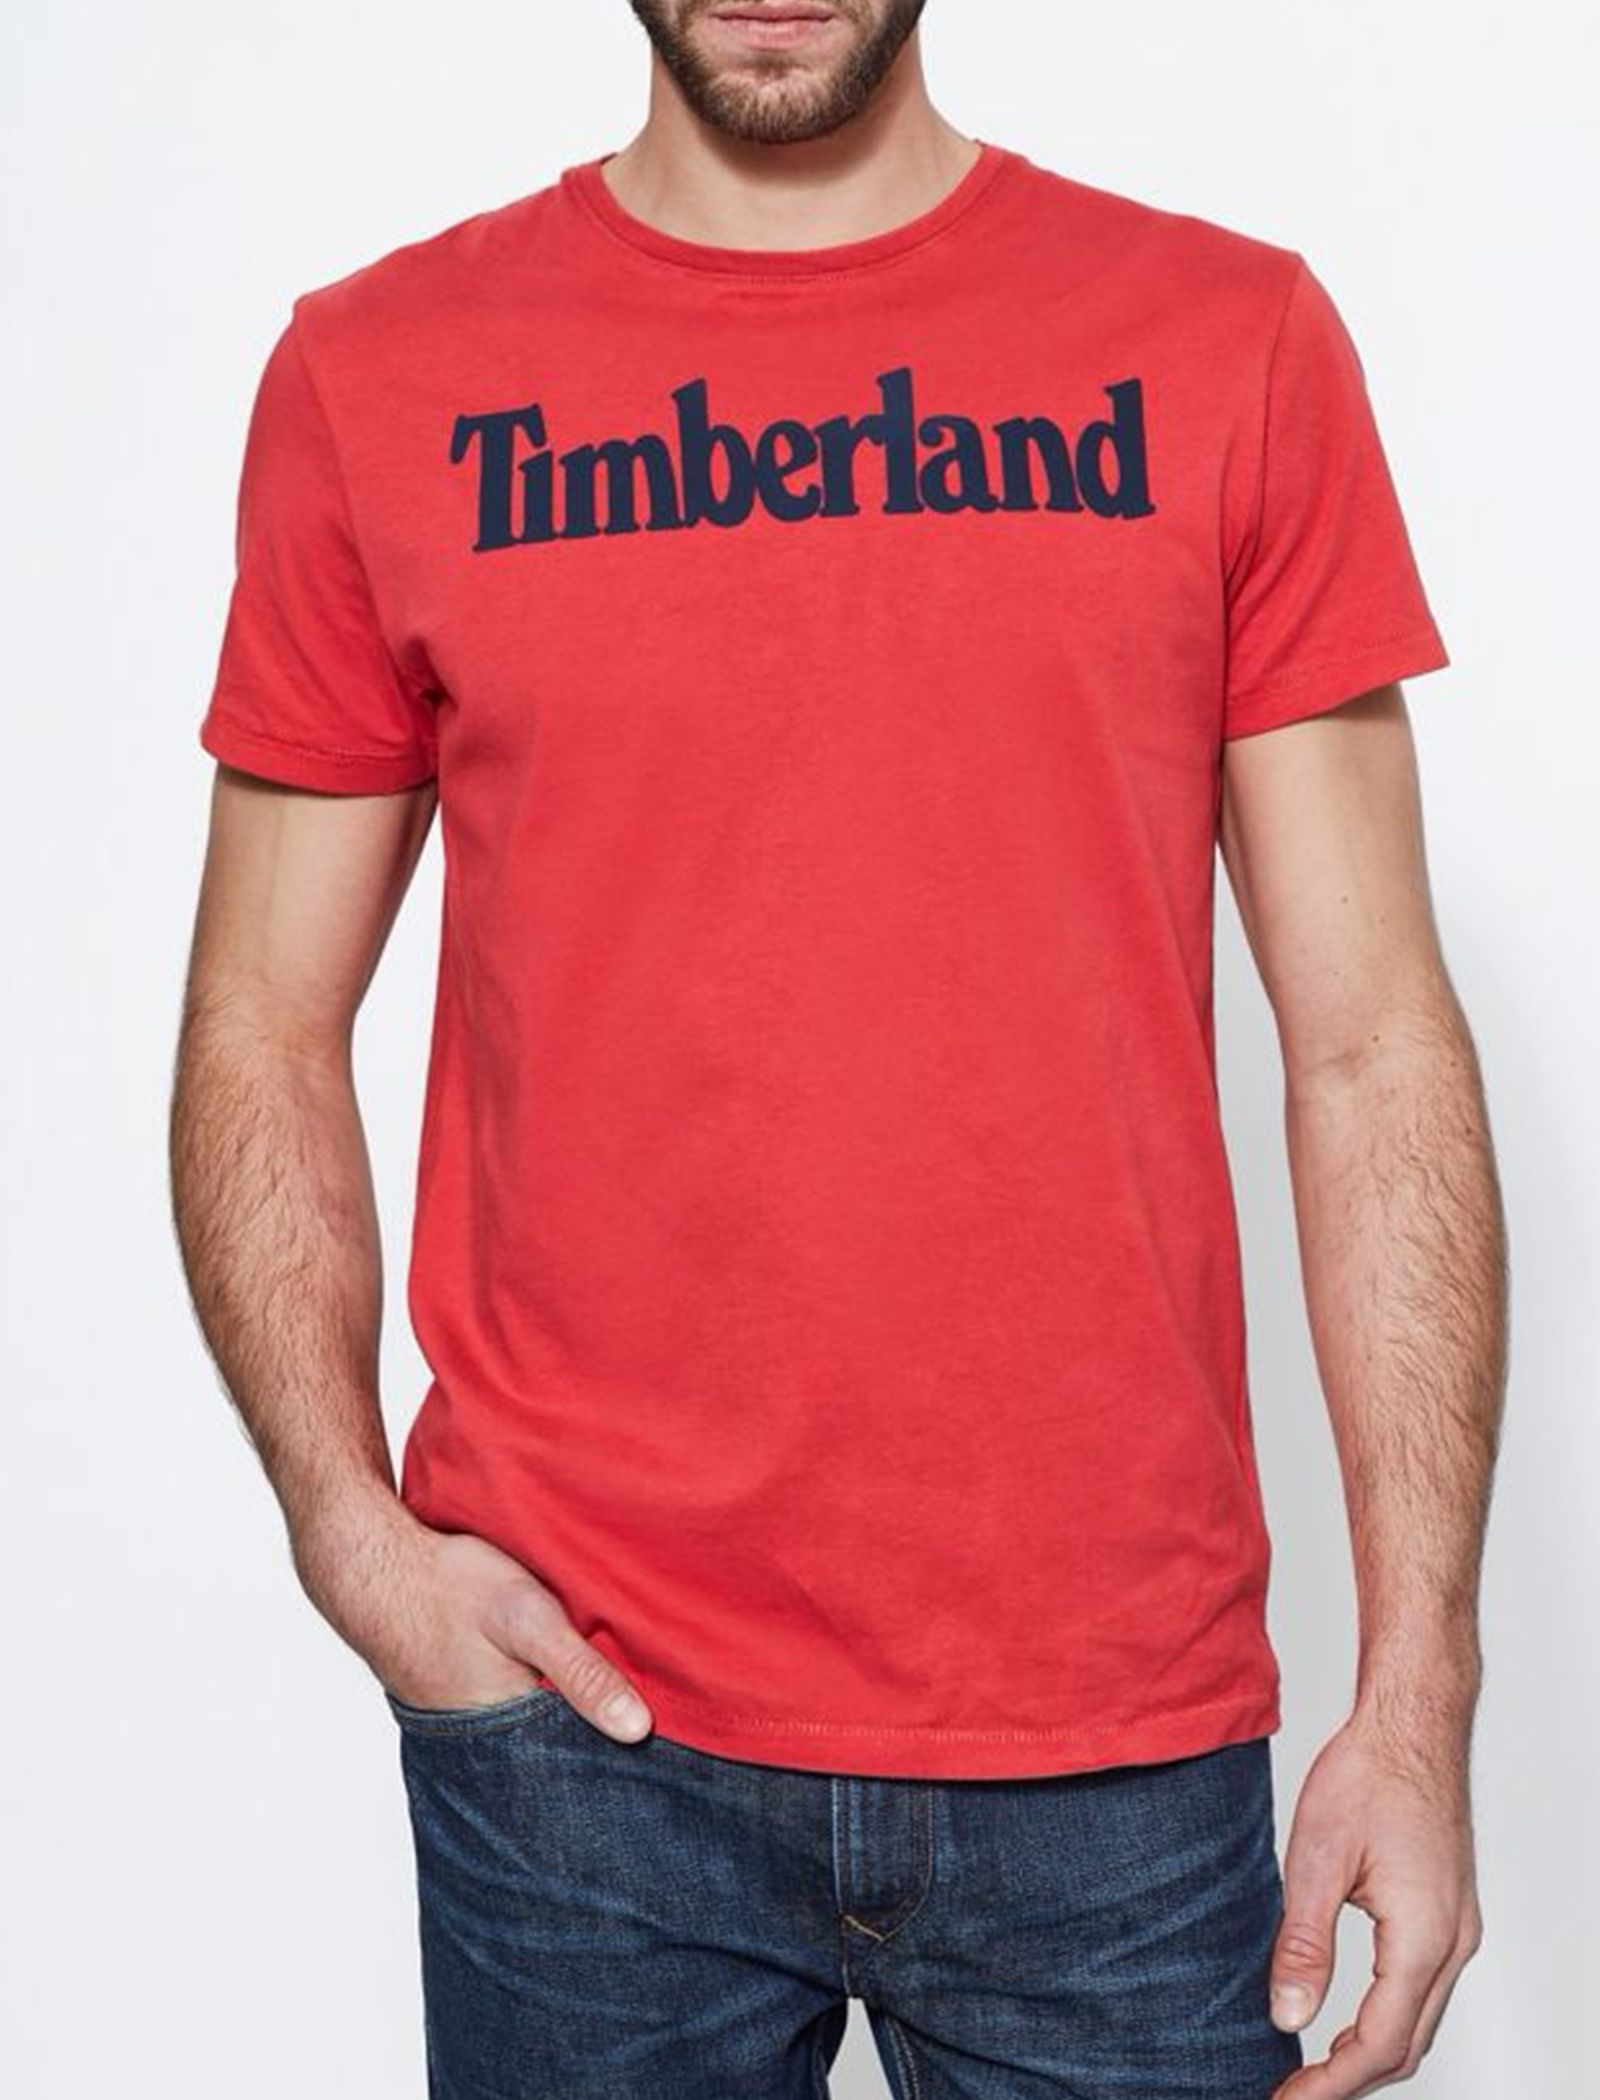 تی شرت نخی آستین کوتاه مردانه - تیمبرلند - قرمز - 3